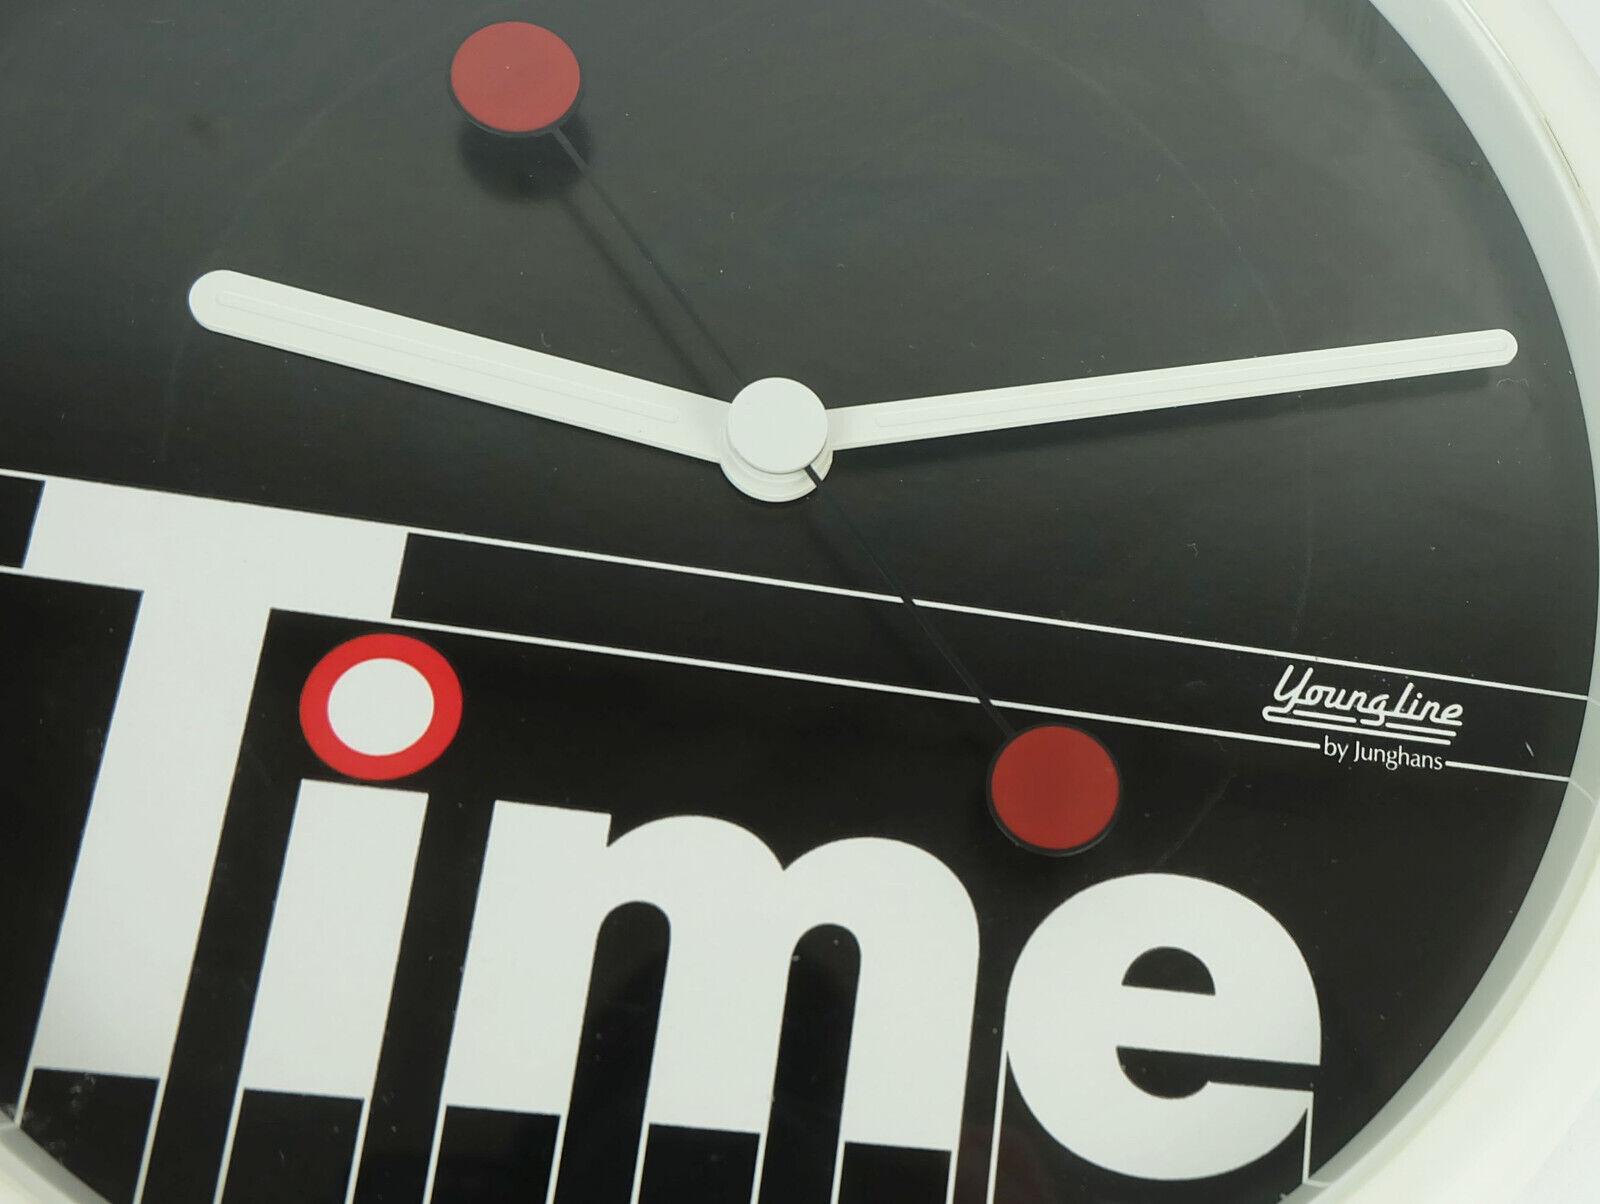 Superbe et rare horloge murale des années 1980 de Junghans Youngline. Fabriqué en plastique noir et blanc avec des accents rouges. Design/One typique des années 1980. Horloge à pile de Junghans (livraison sans pile). 

Dimensions en cm :
Diamètre 22